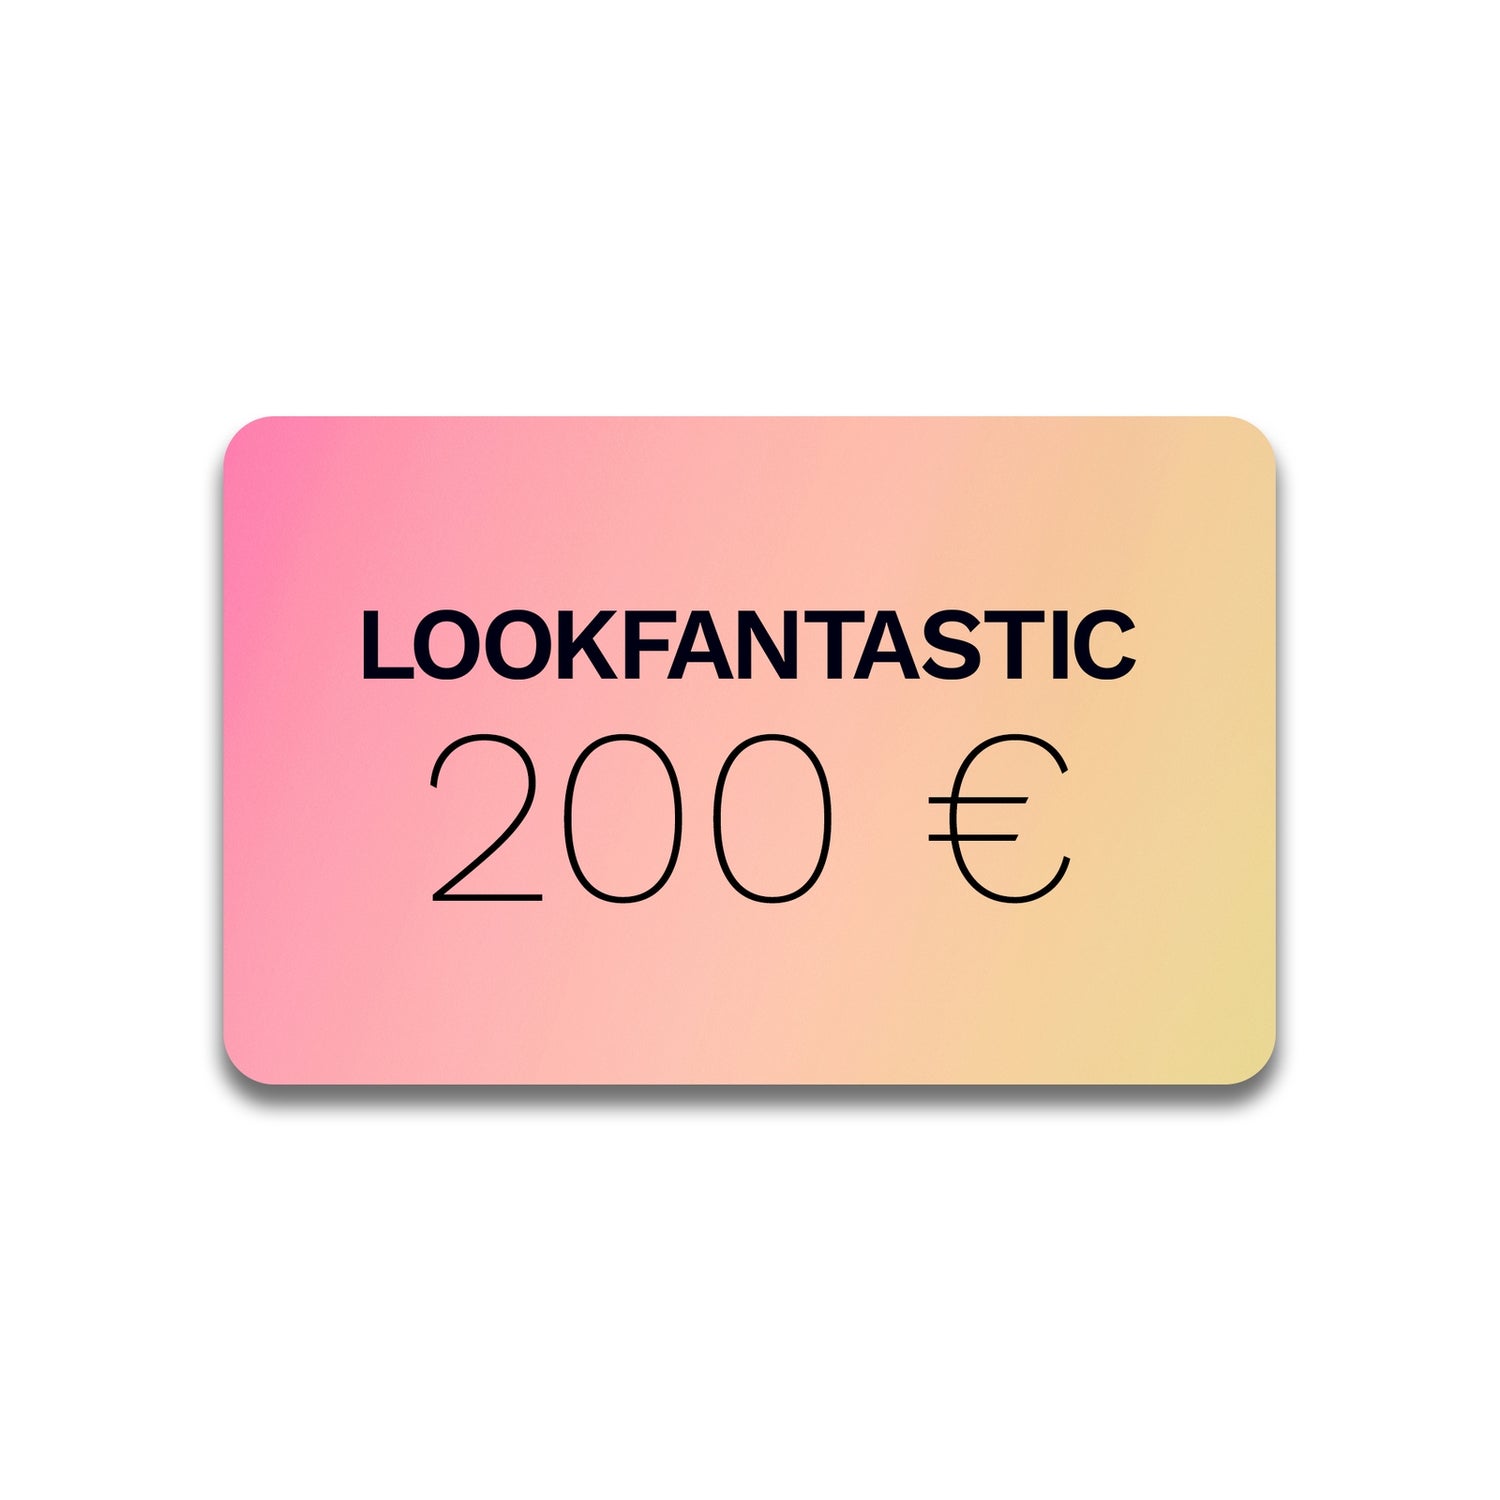 LOOKFANTASTIC Gift Voucher €200